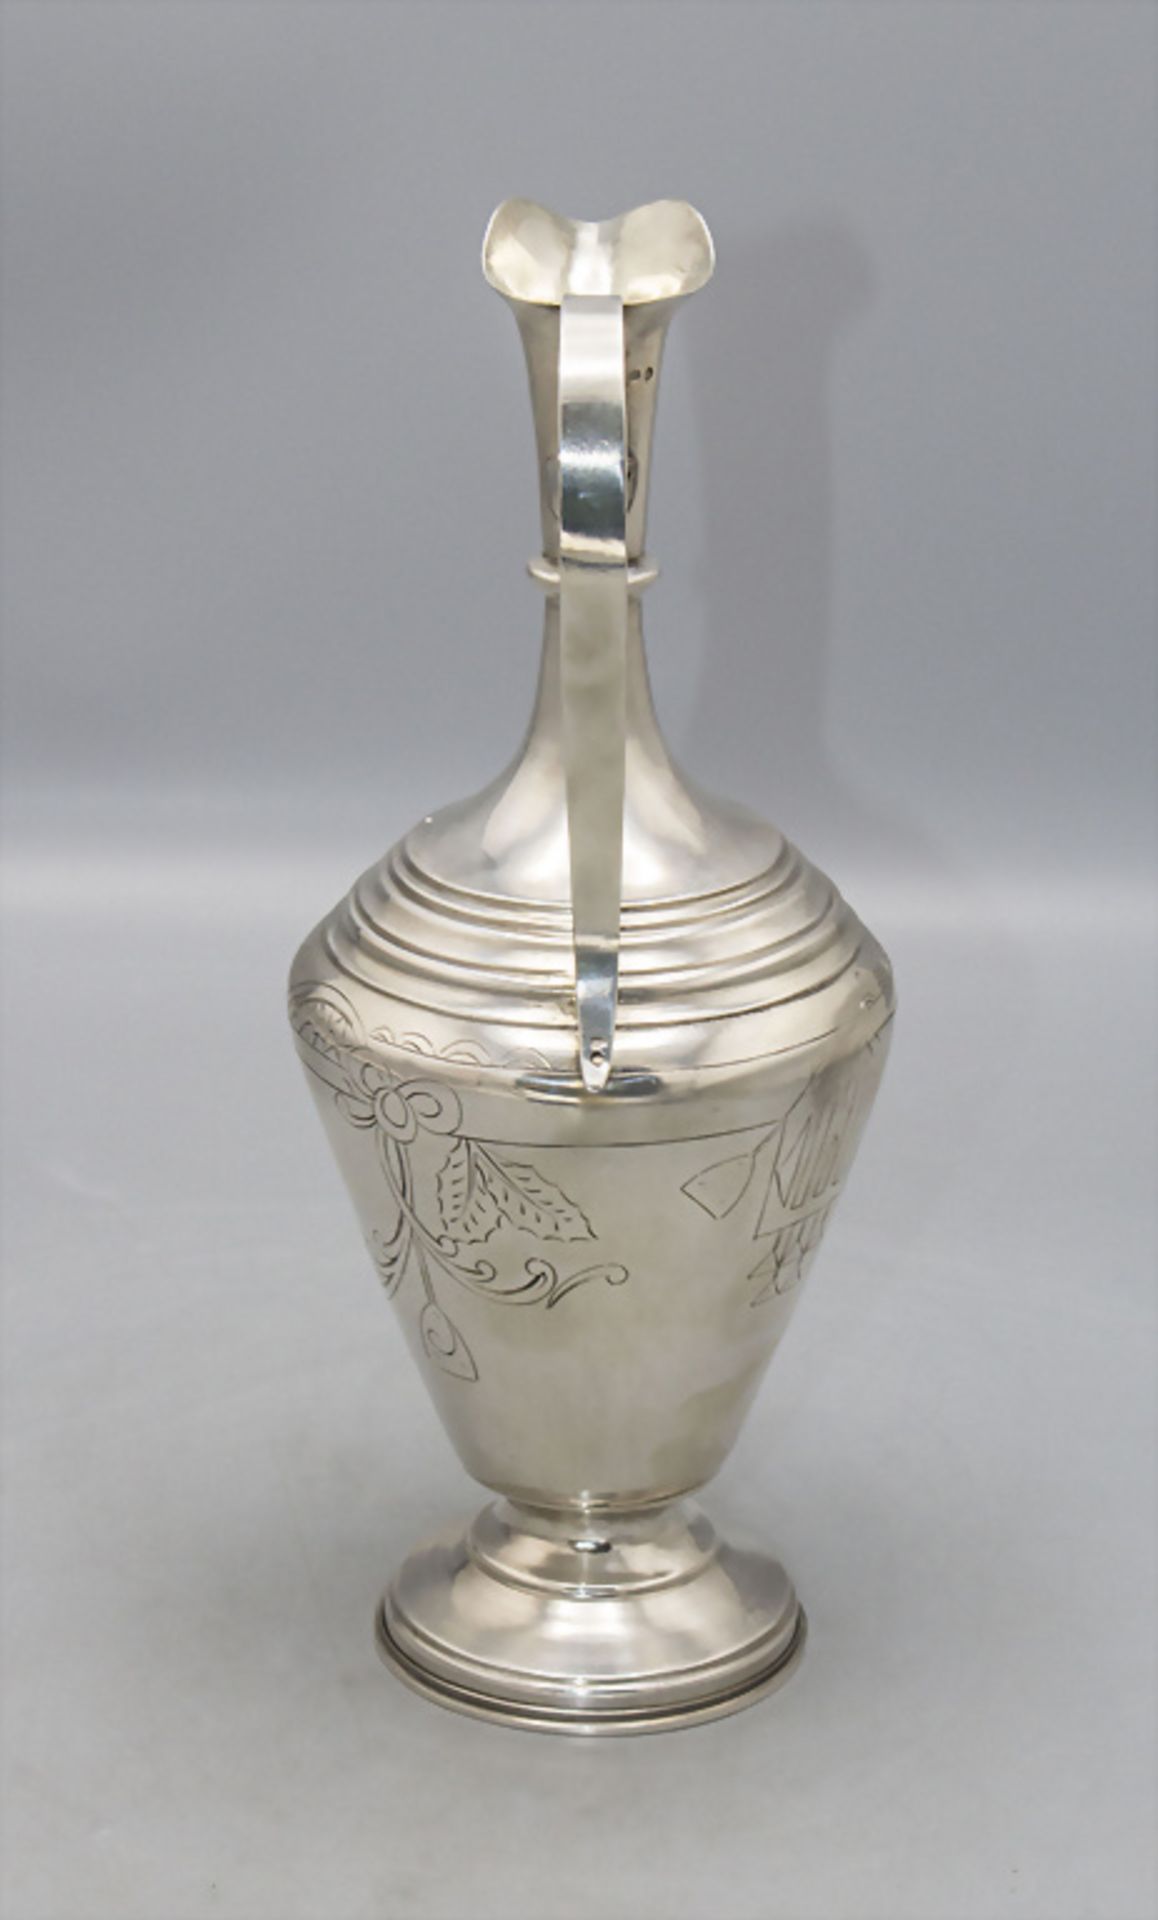 Schenkkrug / A silver jug, Vasily Sergeevich Sikachev, Moskau/Moscow, 1908-1917 - Bild 4 aus 6